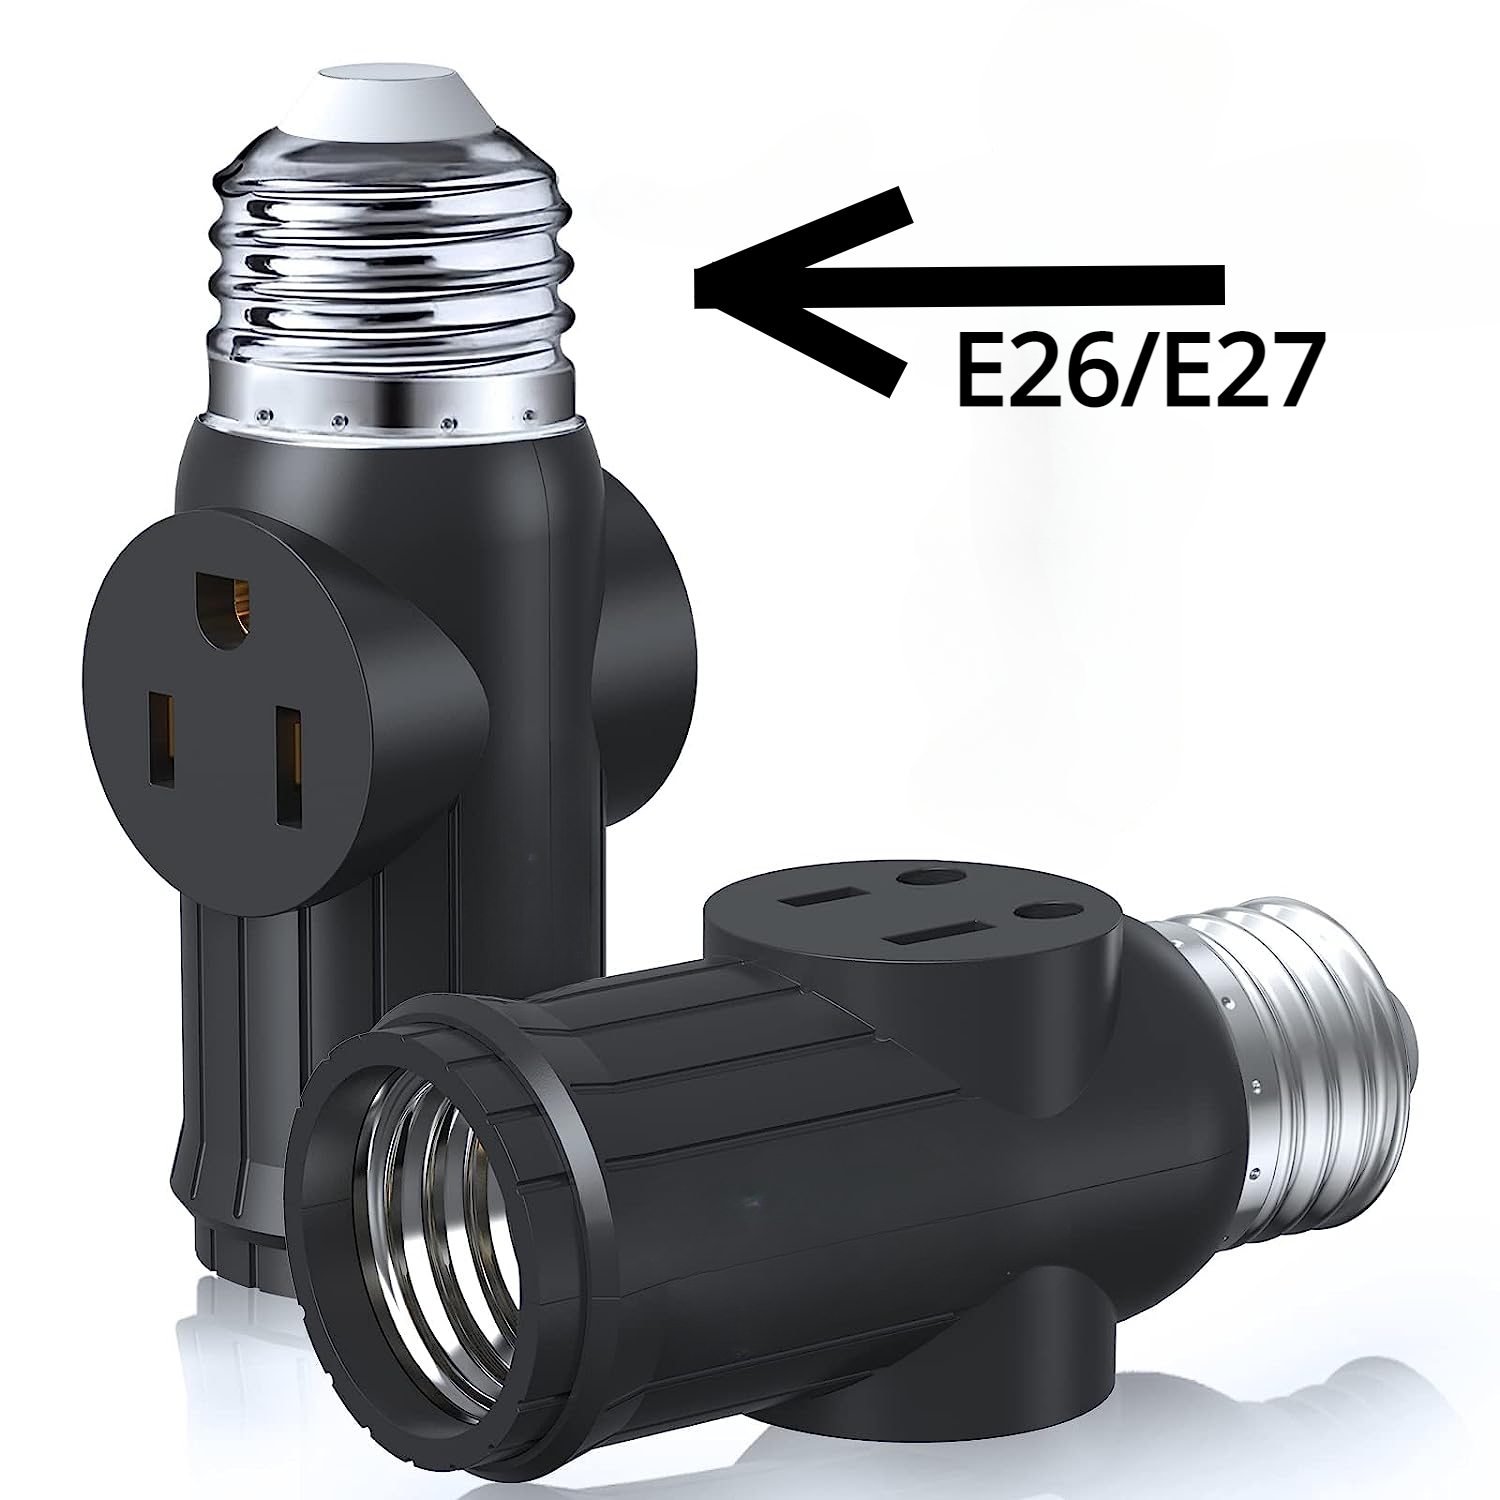 Enchufe E26 a iluminación empotrable LED, base de adaptador de enchufe  Edison E26 mediano, rosca macho en bombilla para luces de techo LED,  paquete de